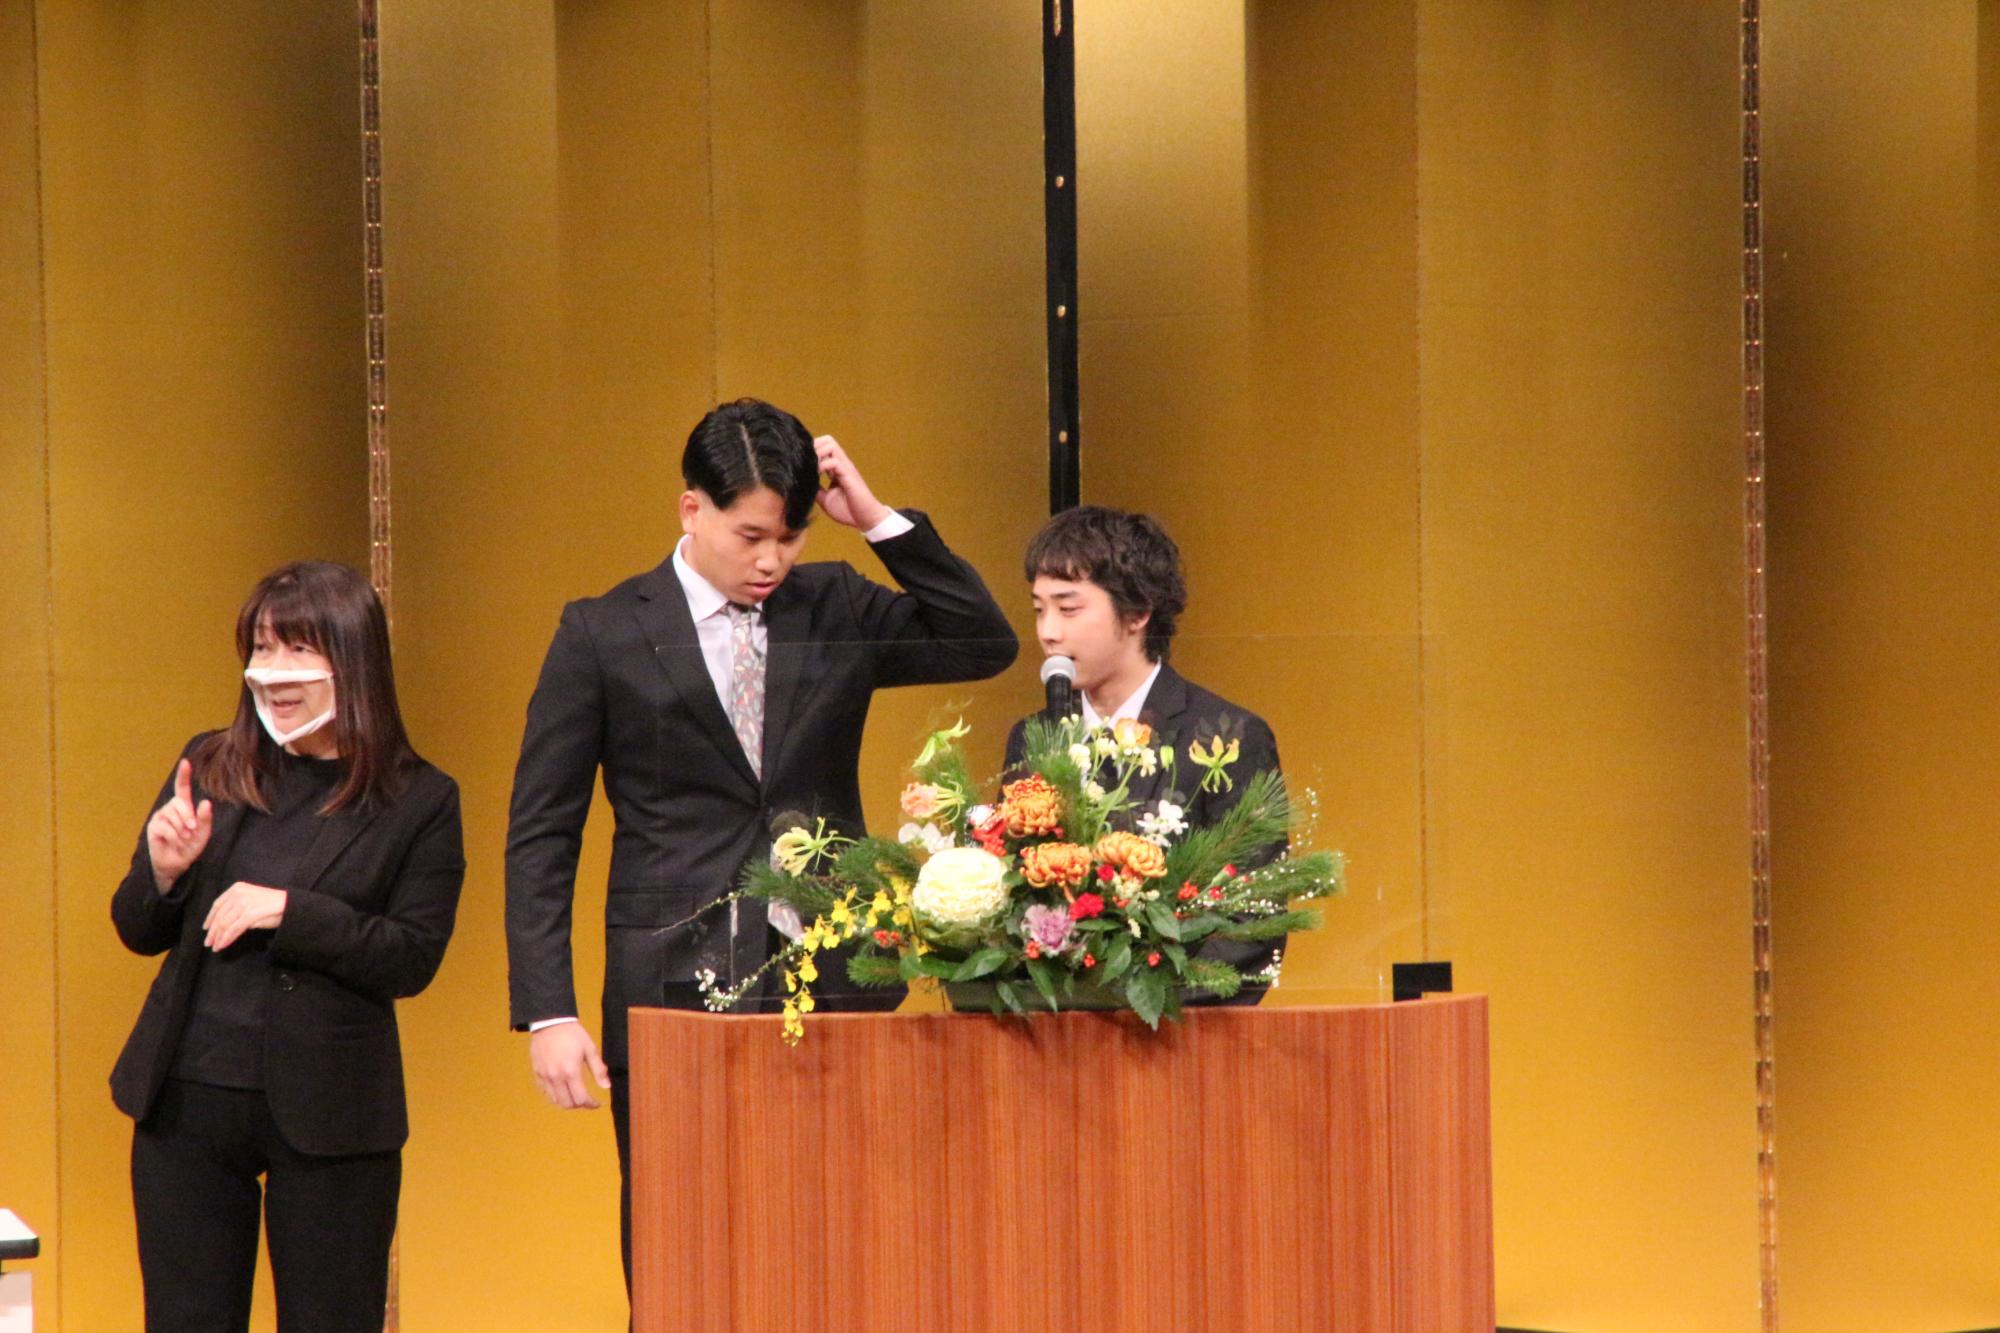 山崎文化会館のステージ上で式典のフィナーレを飾る漫才を披露した実行員会のメンバー